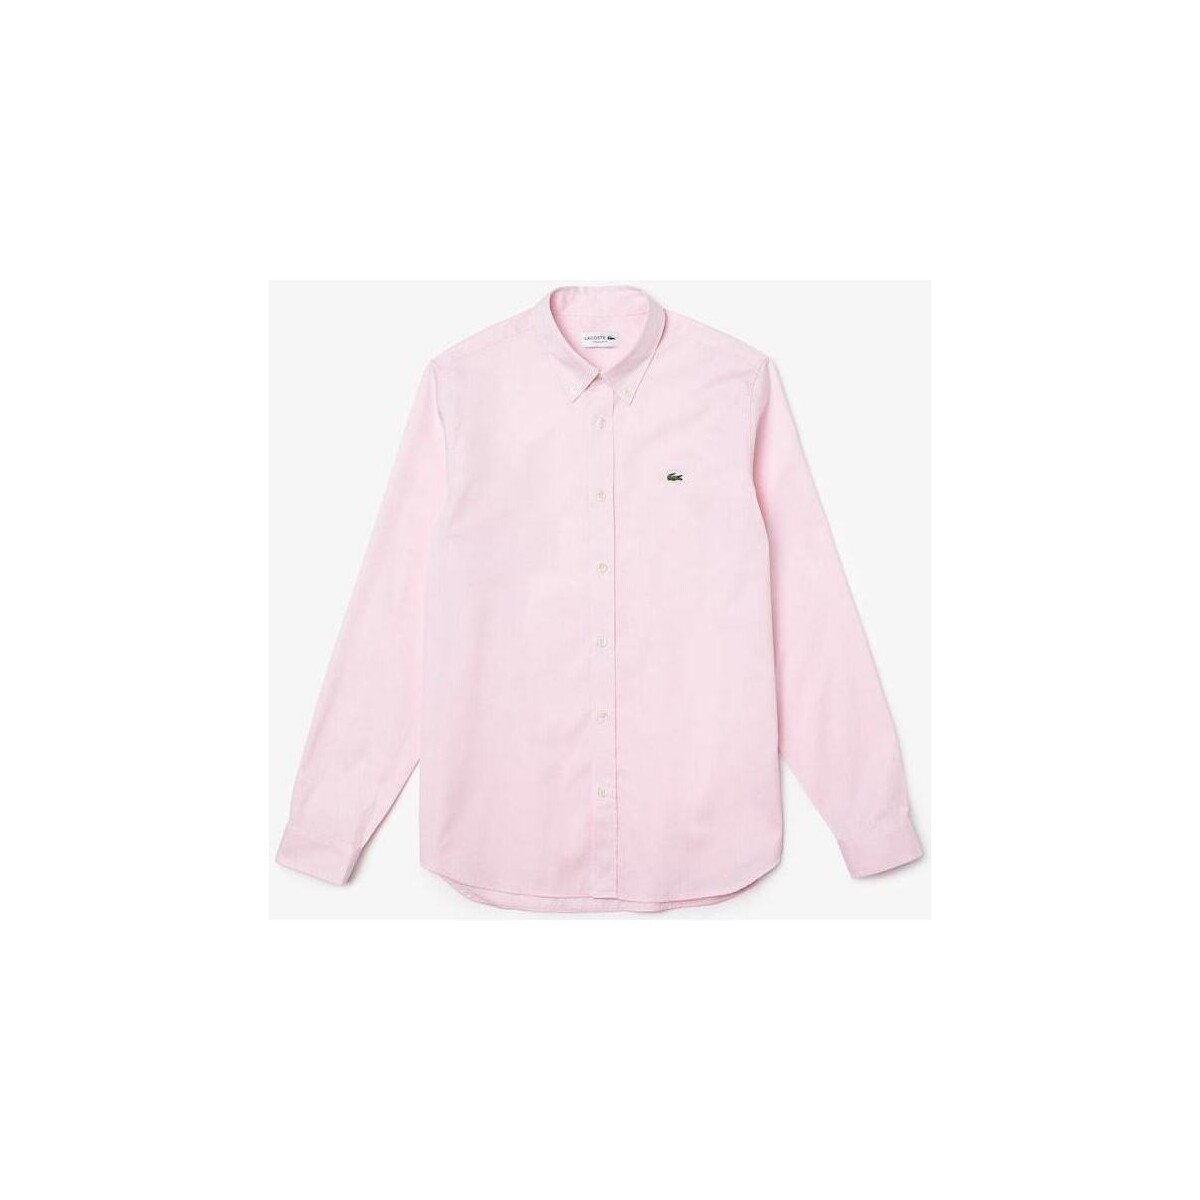 Vêtements Homme Chemises manches longues Lacoste Chemise  rose clair en coton Rose